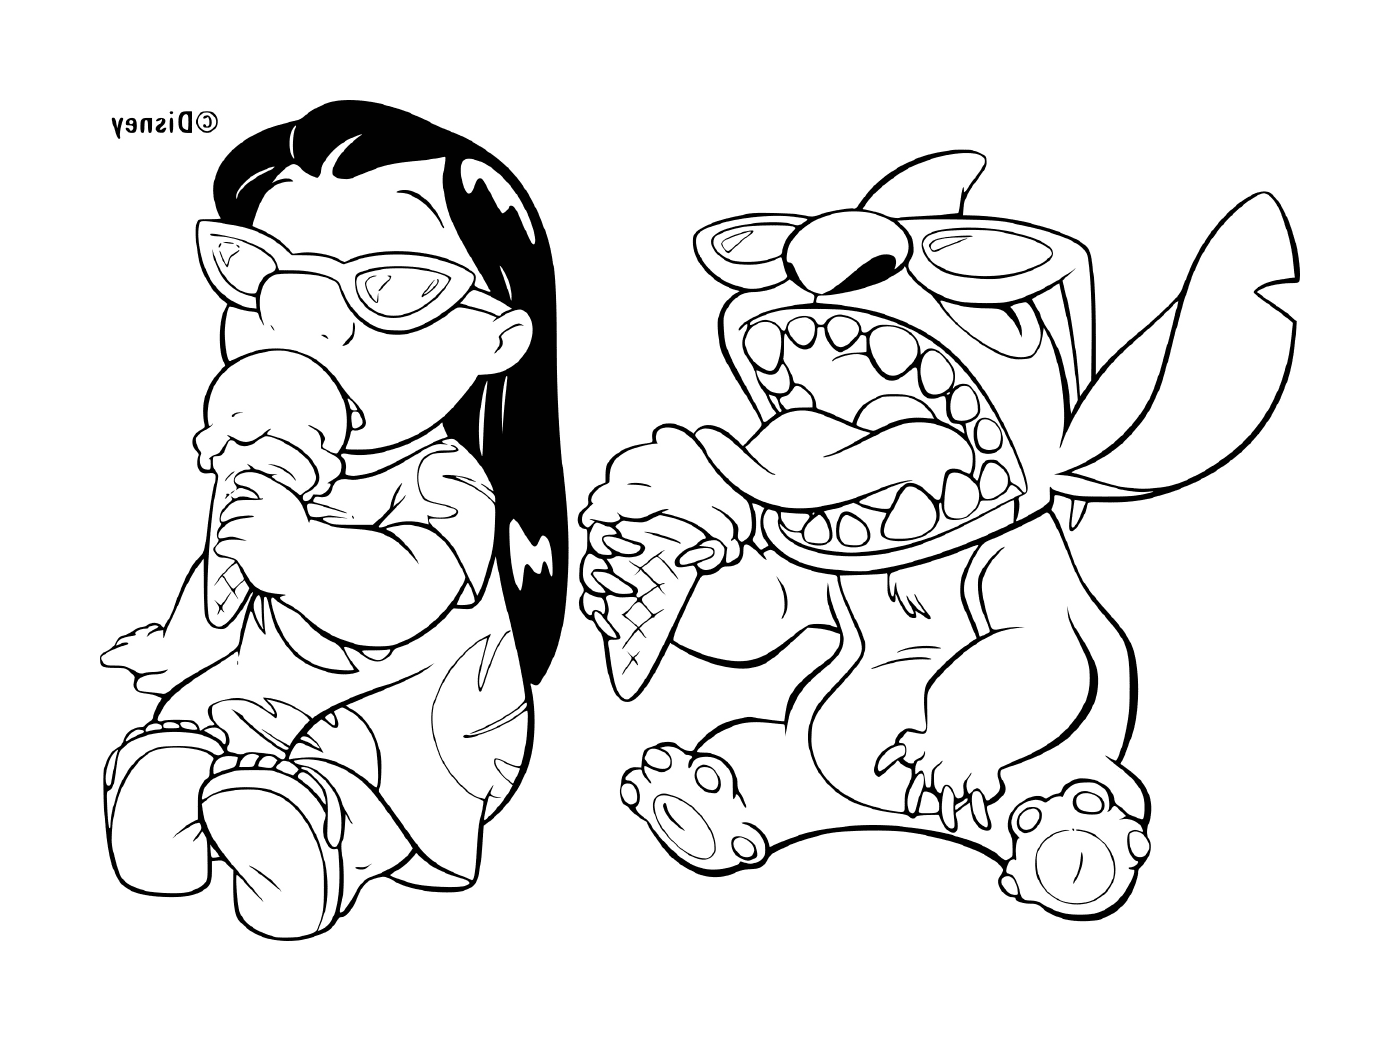  Dos personajes de dibujos animados, uno de los cuales come una rebanada de pizza 